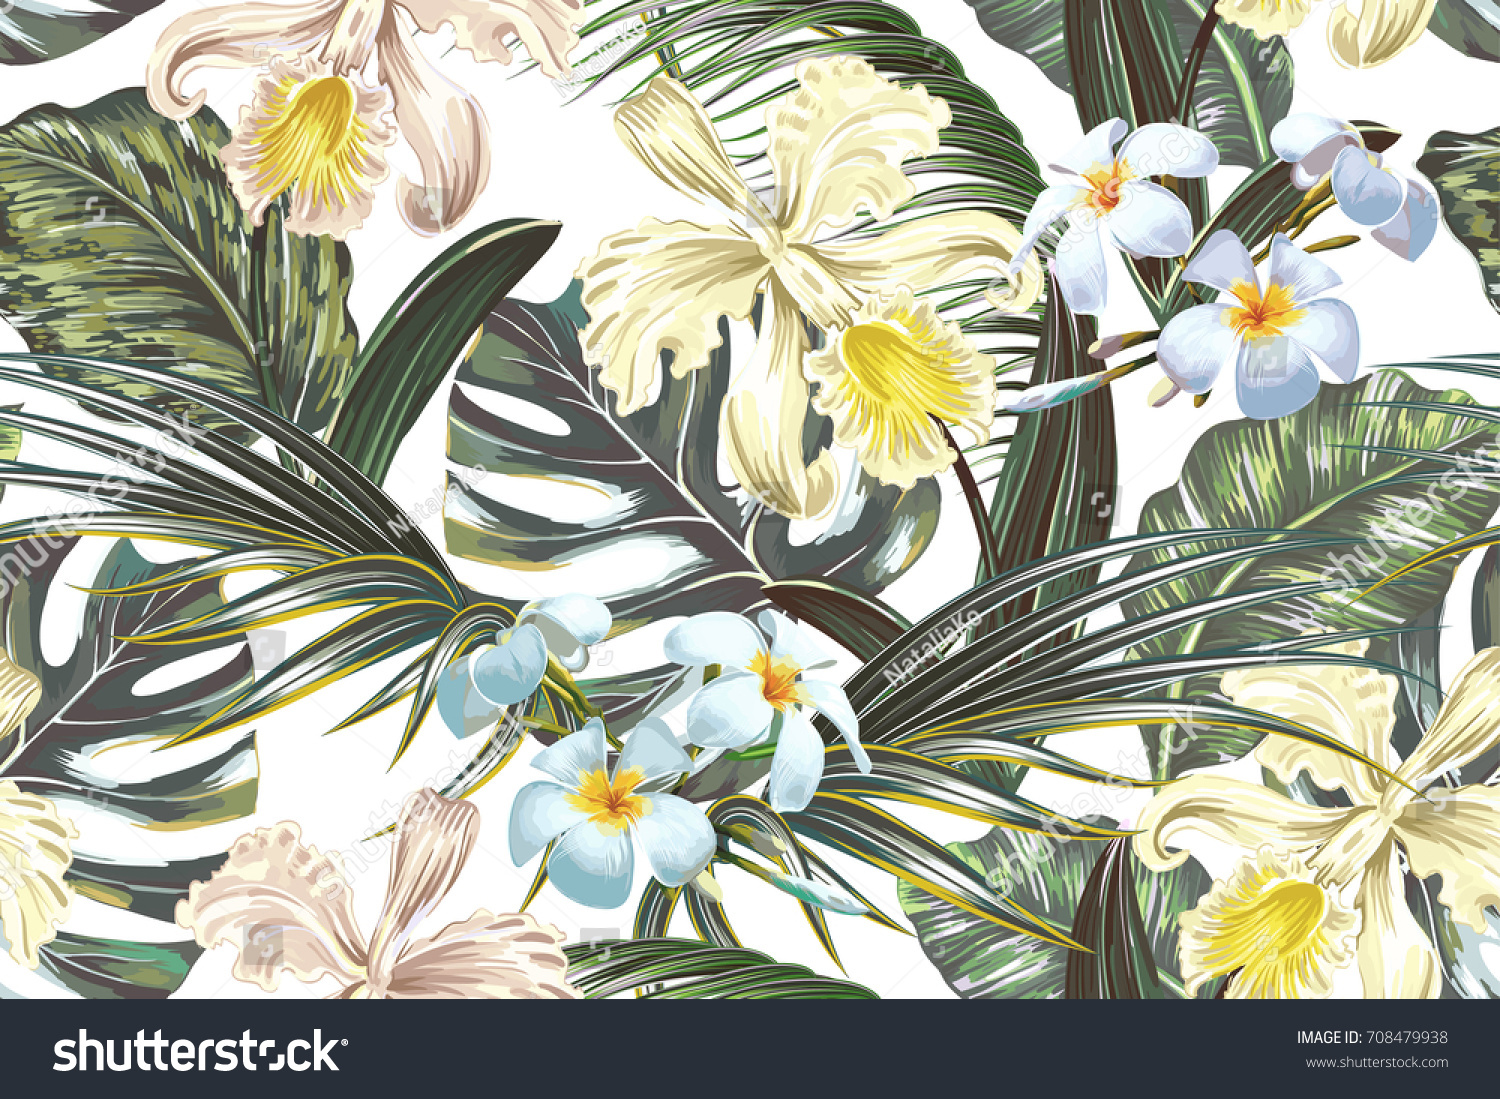 夏の背景にエキゾチックな花 ヤシの葉 ジャングルの葉 ランの花を持つ 花柄のシームレスなベクター画像熱帯パターン ビンテージボタニカル壁紙 ハワイ風イラトス のベクター画像素材 ロイヤリティフリー